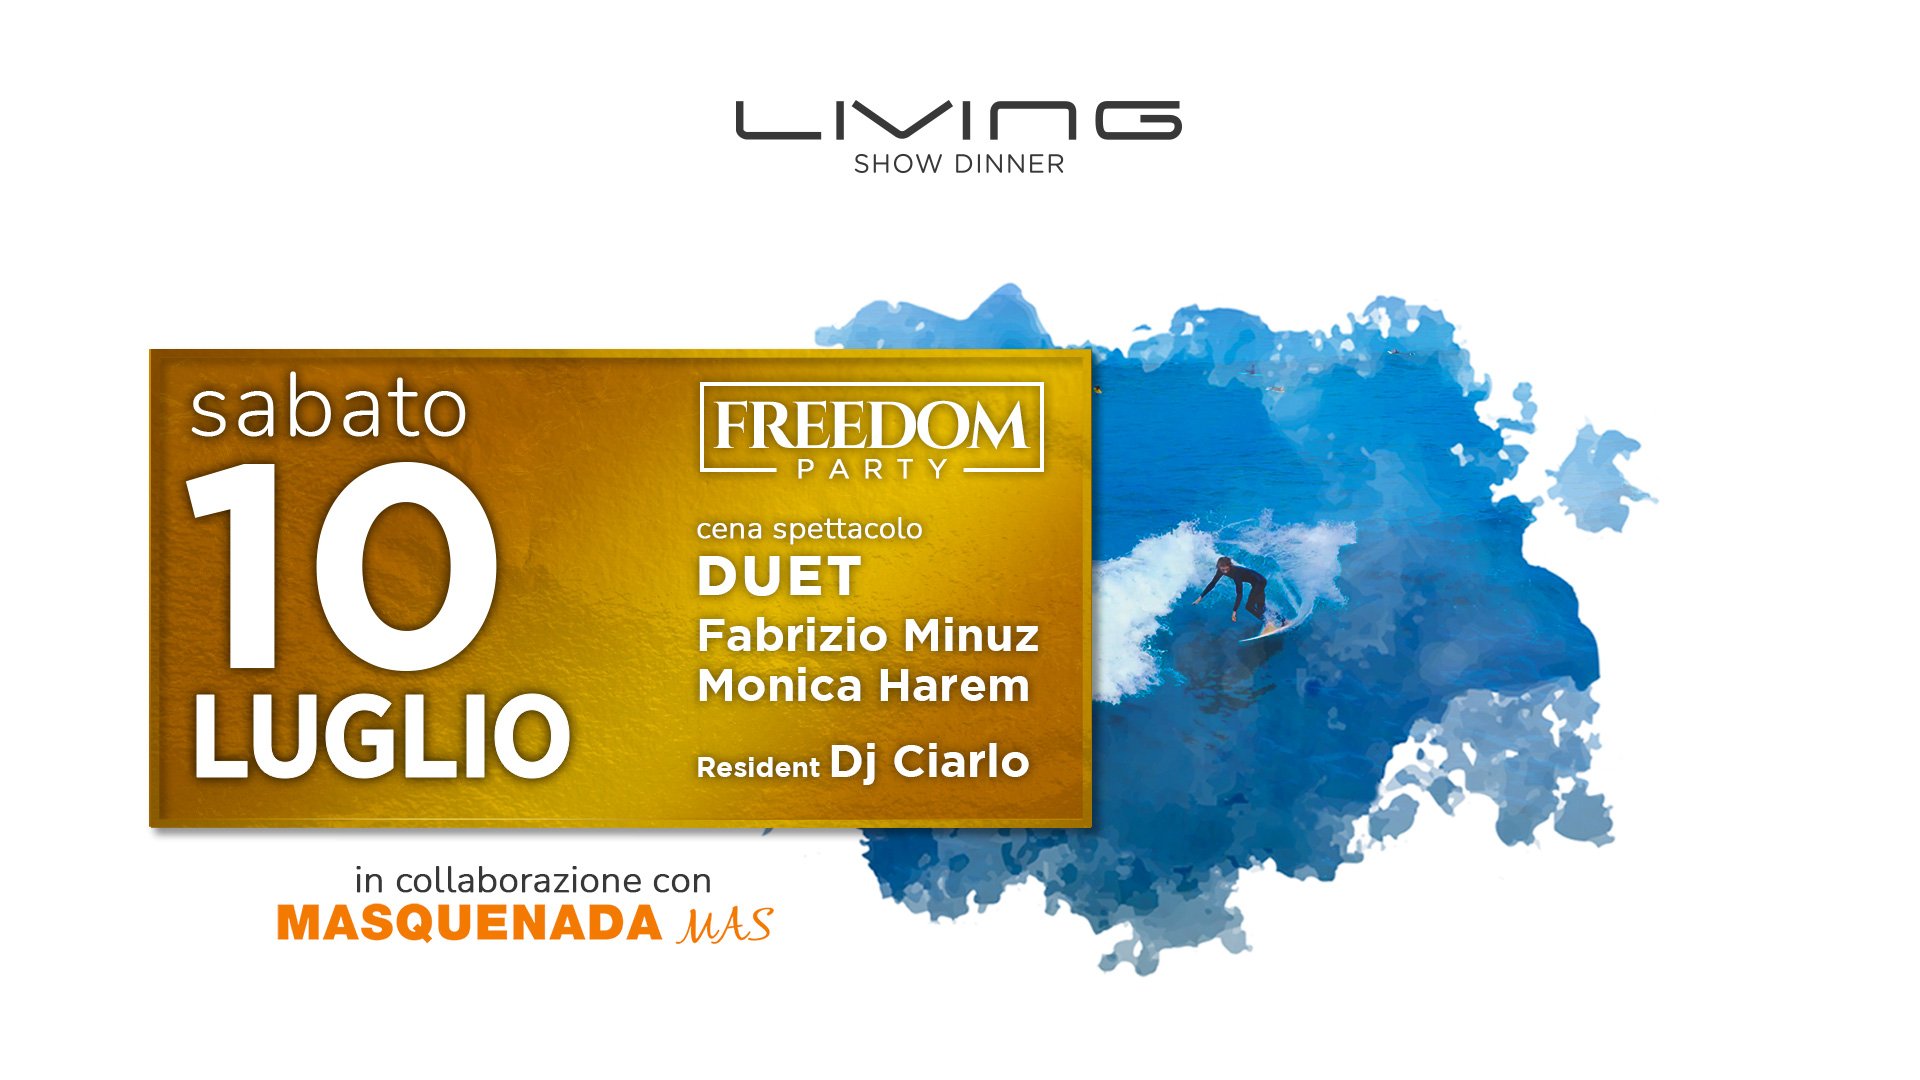 Freedom Party al Living Disco di Misano Adriatico